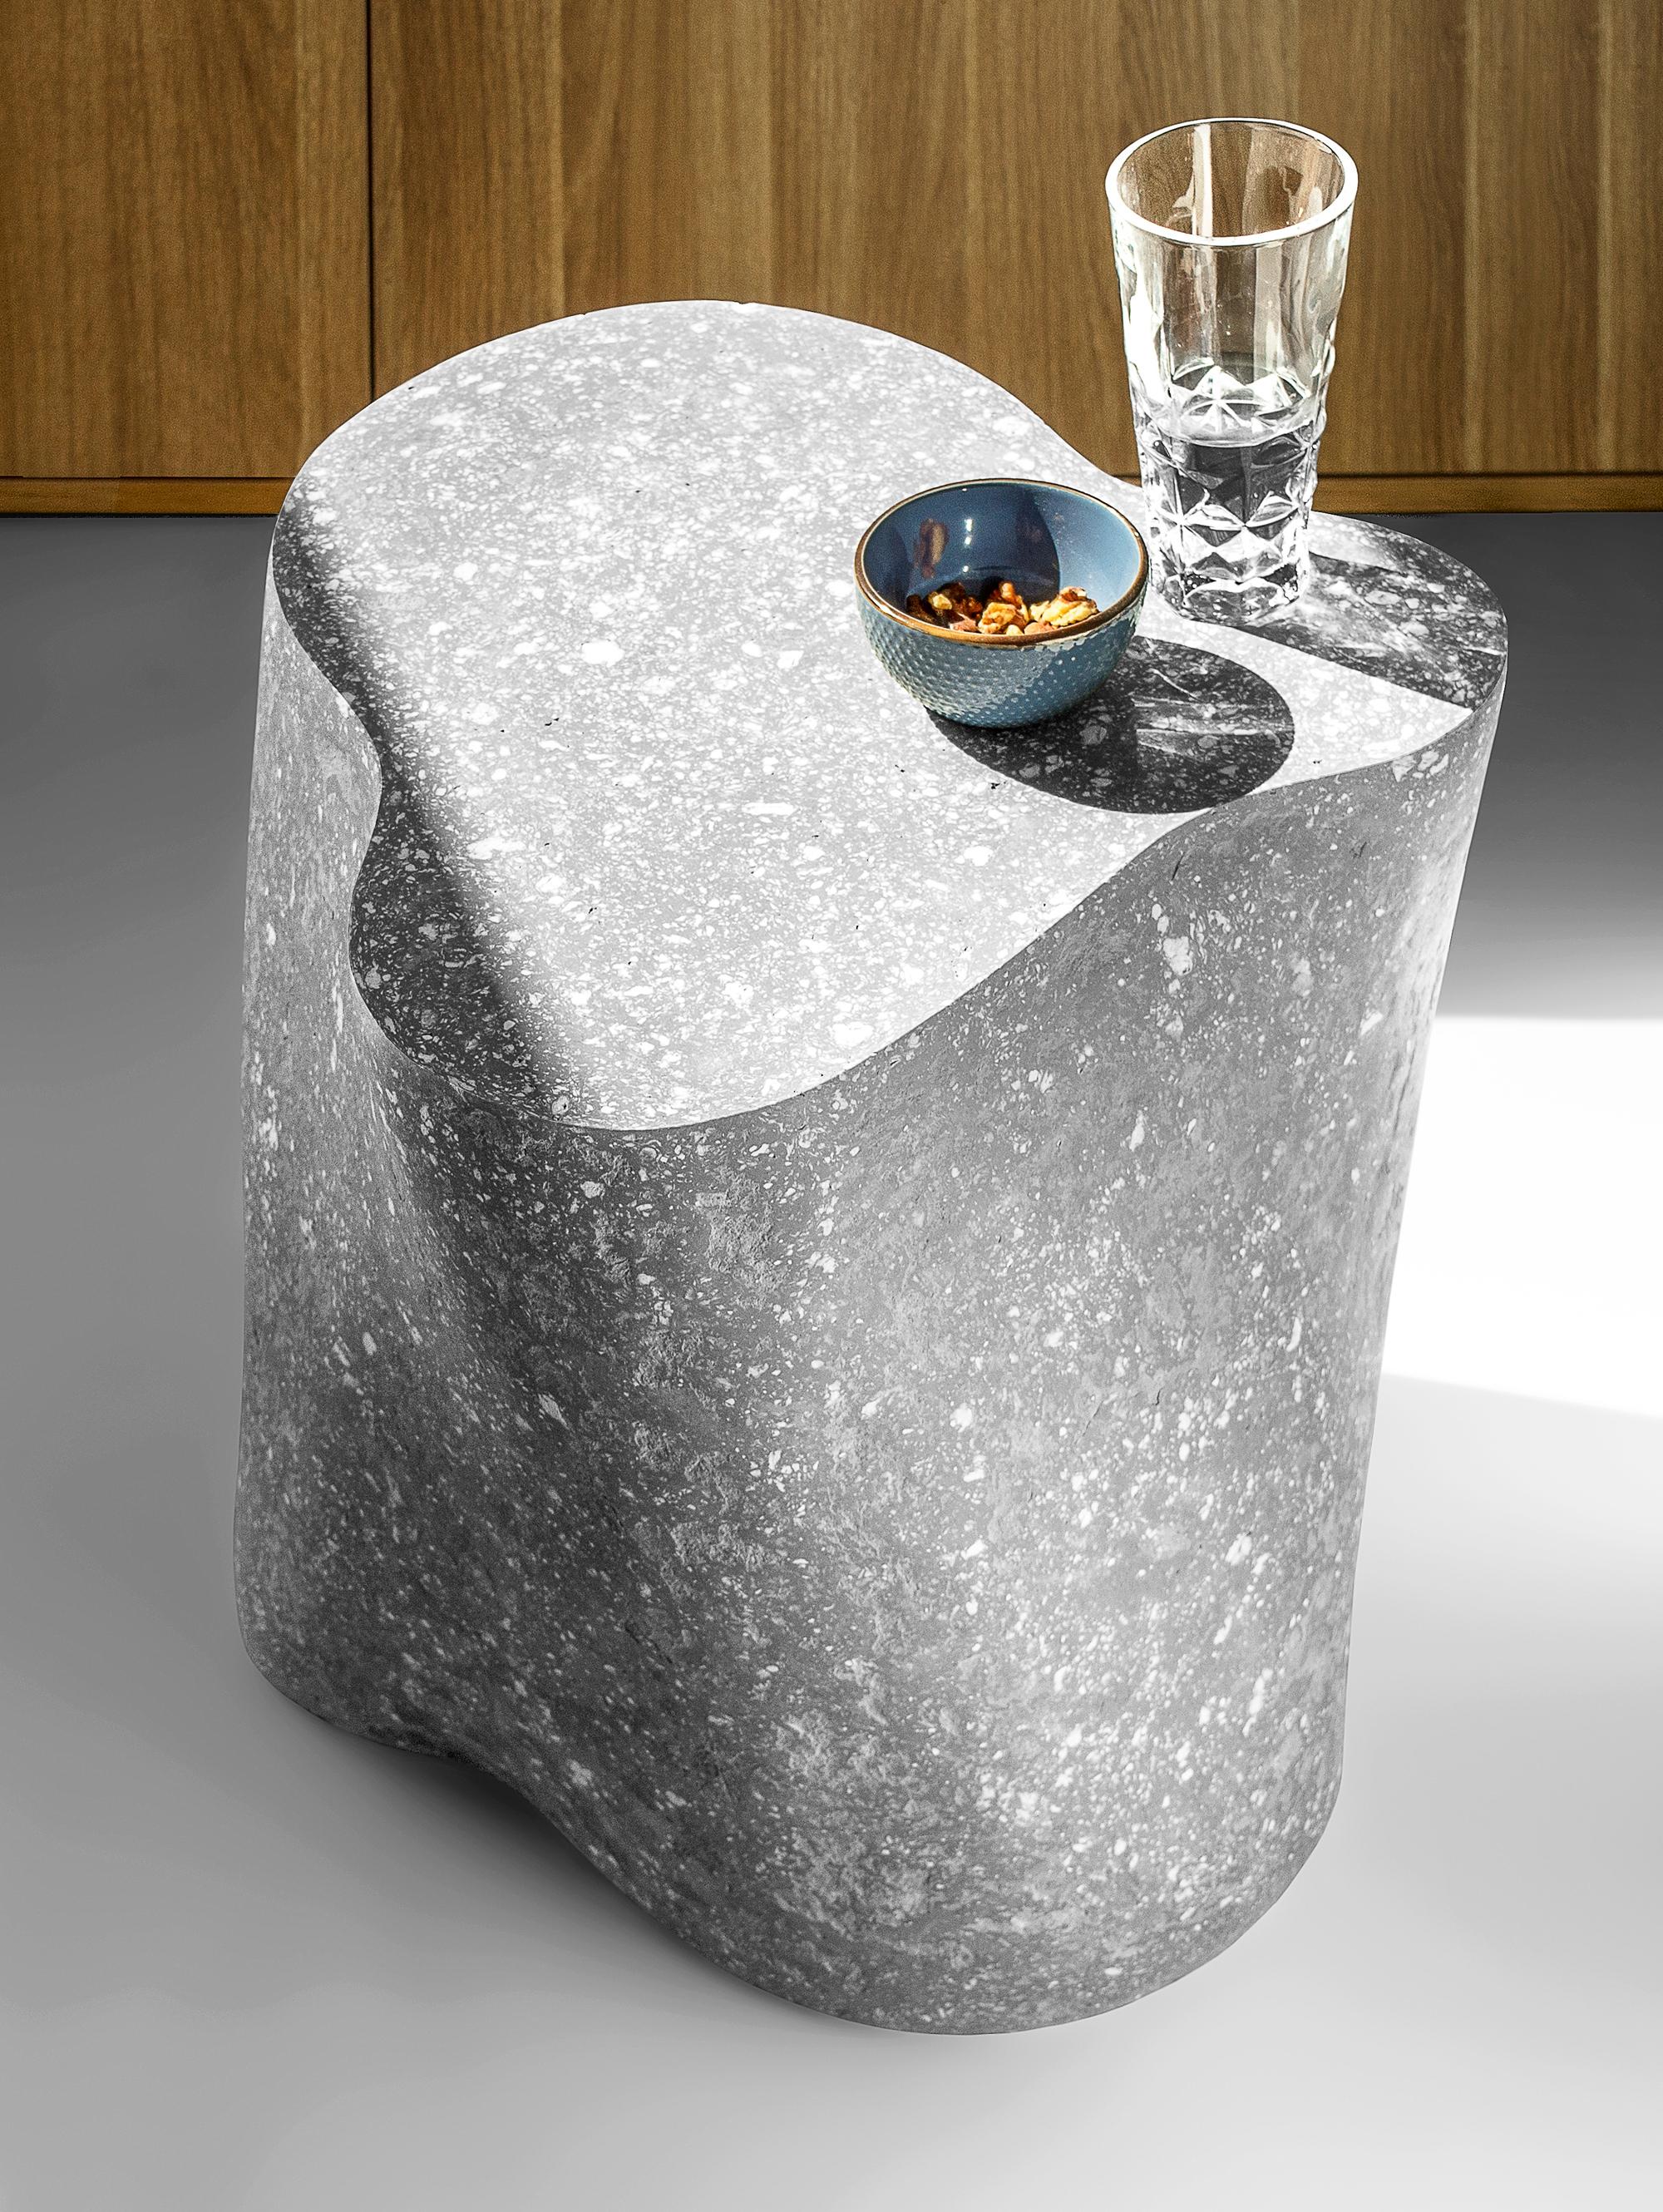 Table basse grise par Kasanai
Dimensions : 45 x 42 x 43 cm : D 45 x L 42 x H 43 cm.
MATERIAL : Béton, bois, papier recyclé, colle, peinture.
10 kg.

Fabriquée à partir d'un mélange écologique de ciment, de papier recyclé, de colle et de peinture,